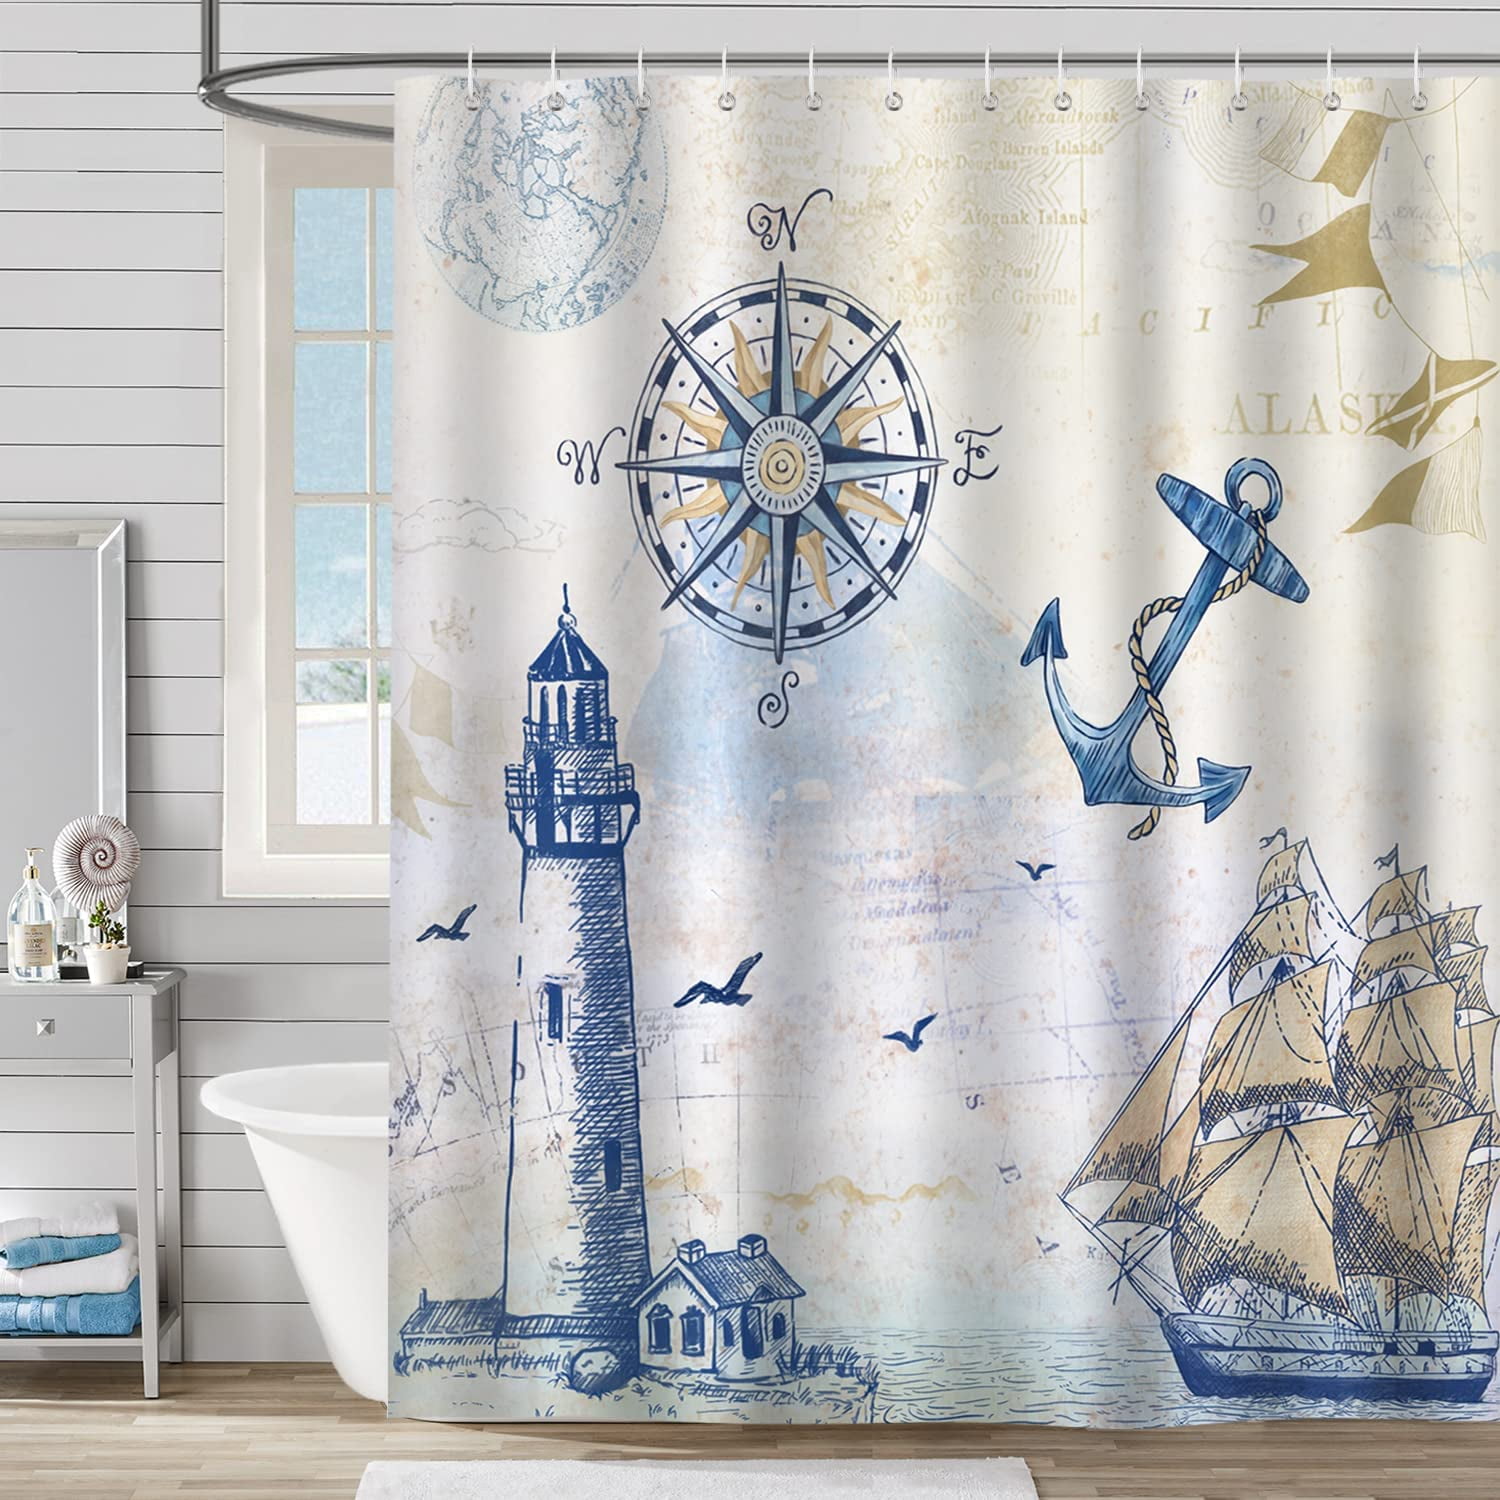 New Lighthouse beach Shower Curtain Bathroom Decor Fabric & 12hooks 71*71inches 